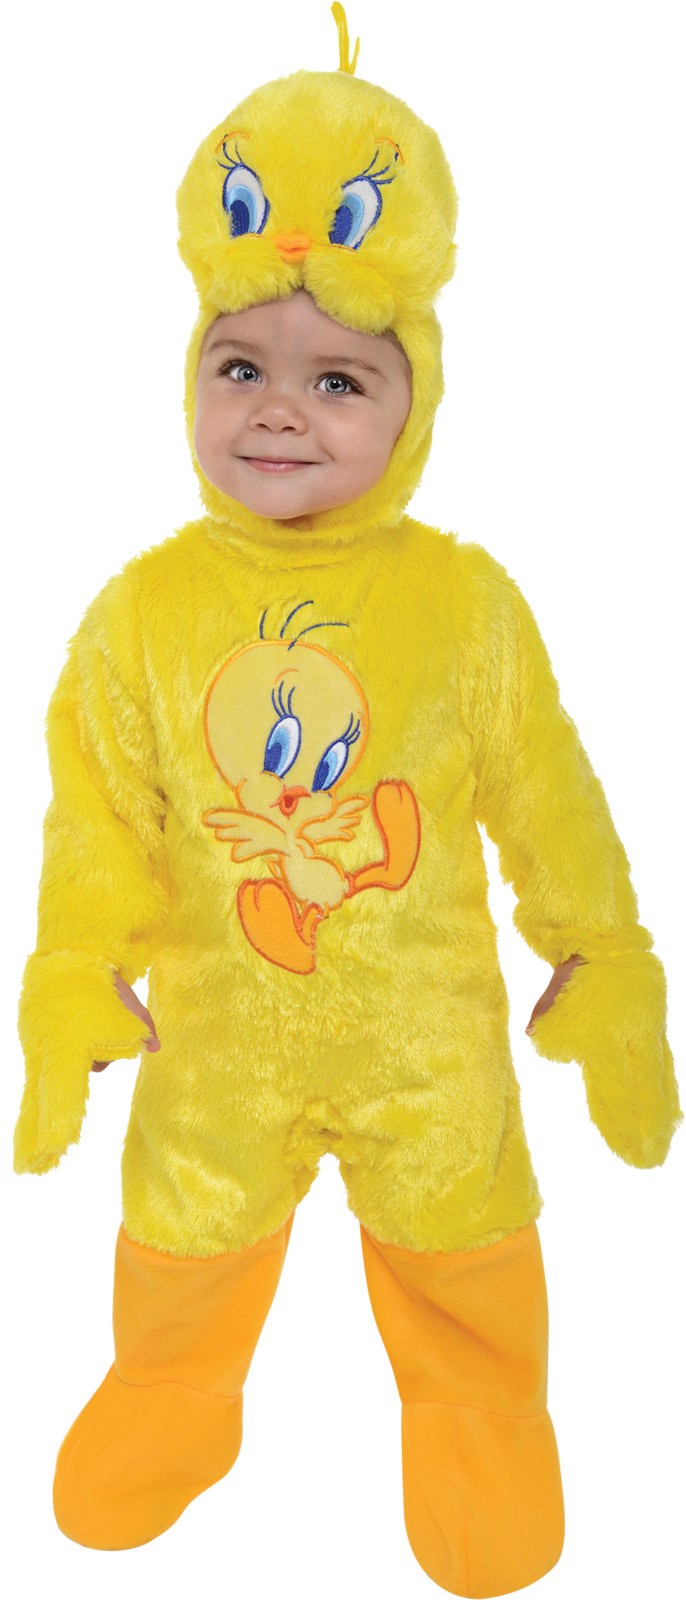 Looney Tunes Tweety Infant Costume